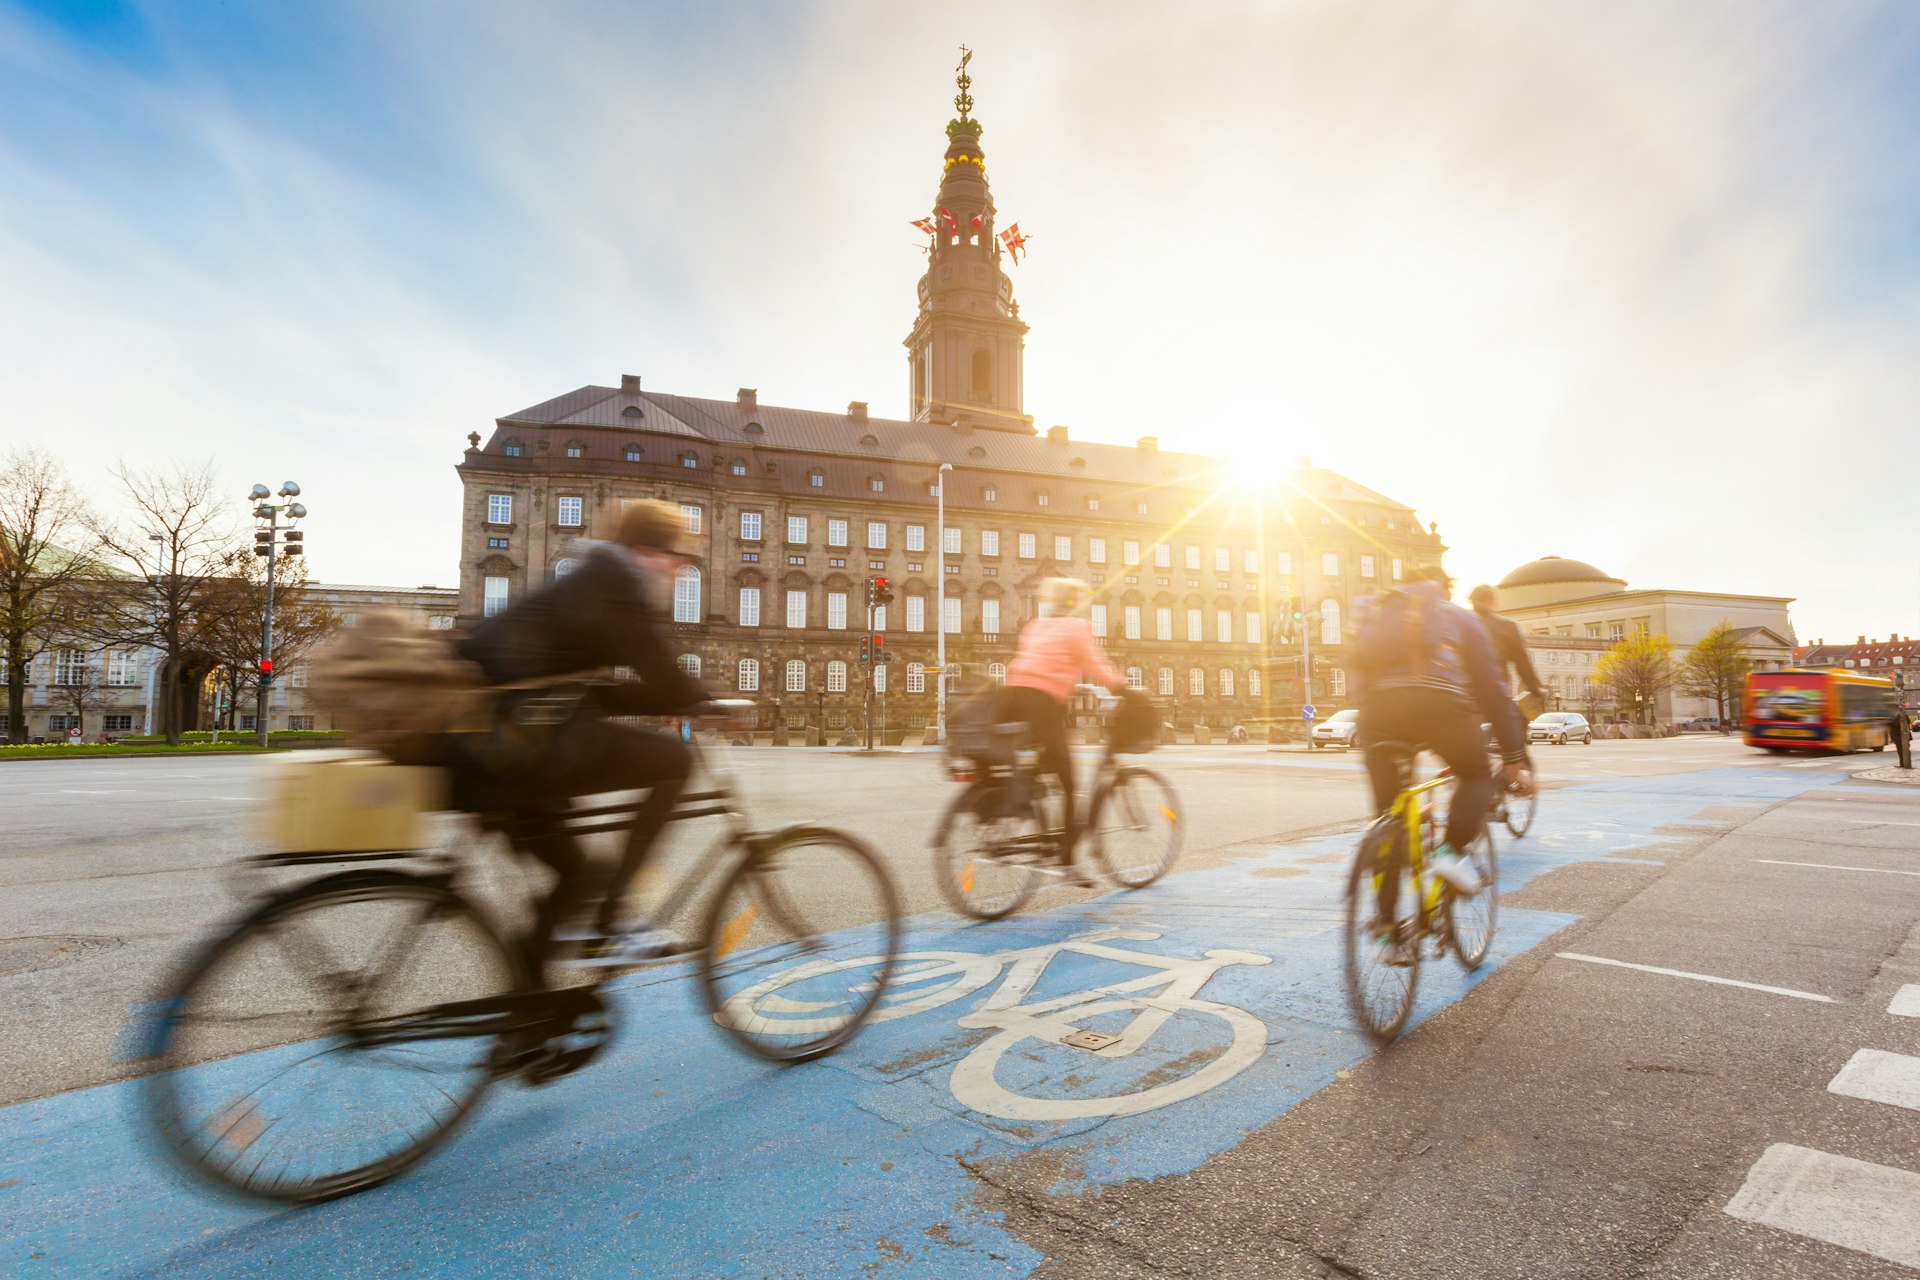 People going by bike in Copenhagen, Denmark